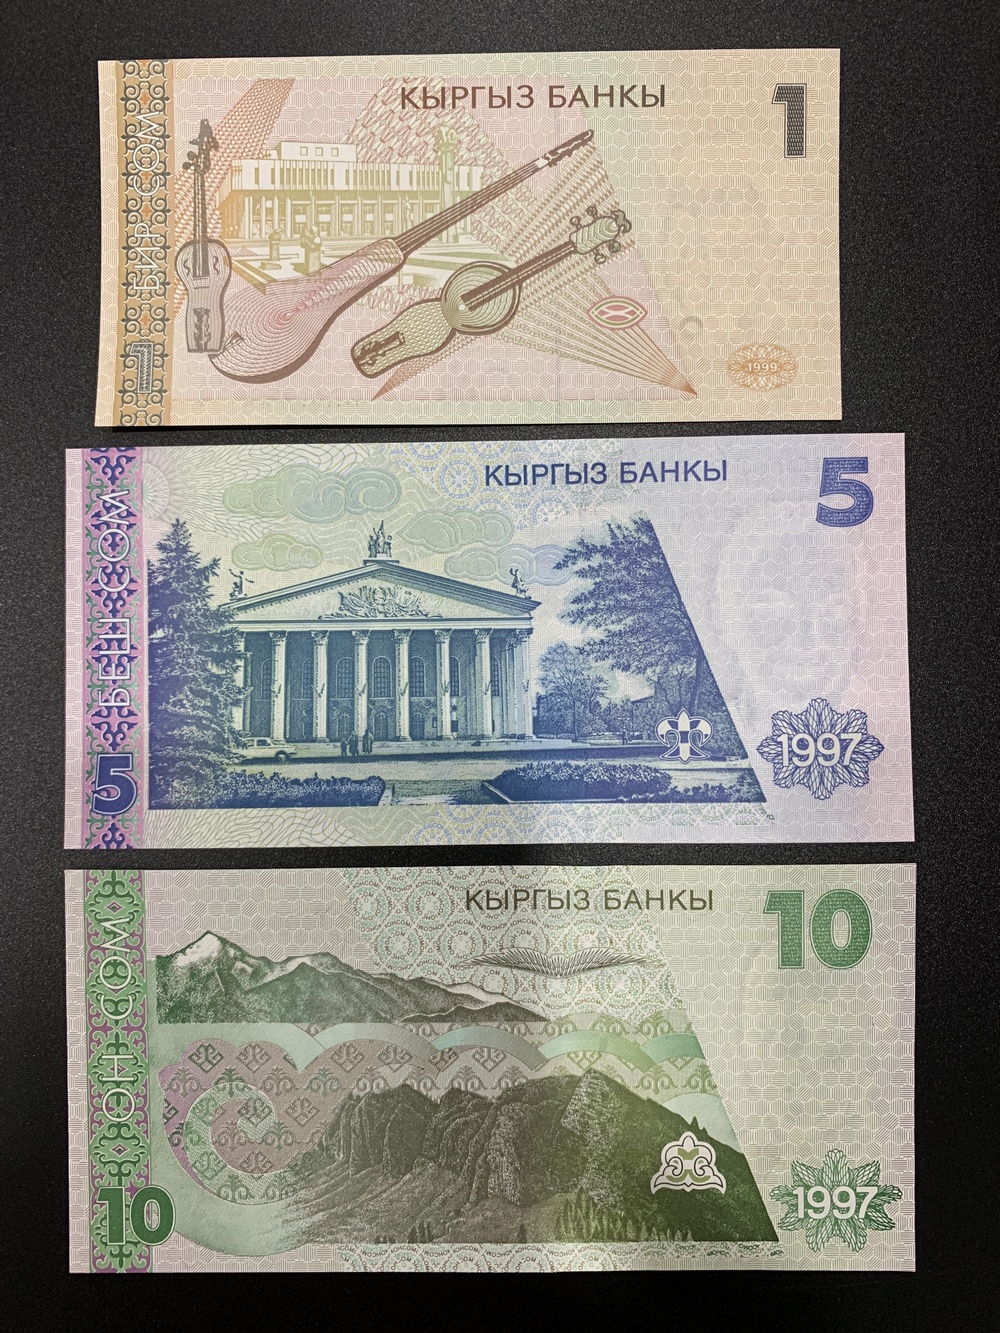 Sét 3 tờ tiền giấy Kyrgyzstan , đất nước Trung Á sưu tầm - Mới 100% UNC - tiền châu Á